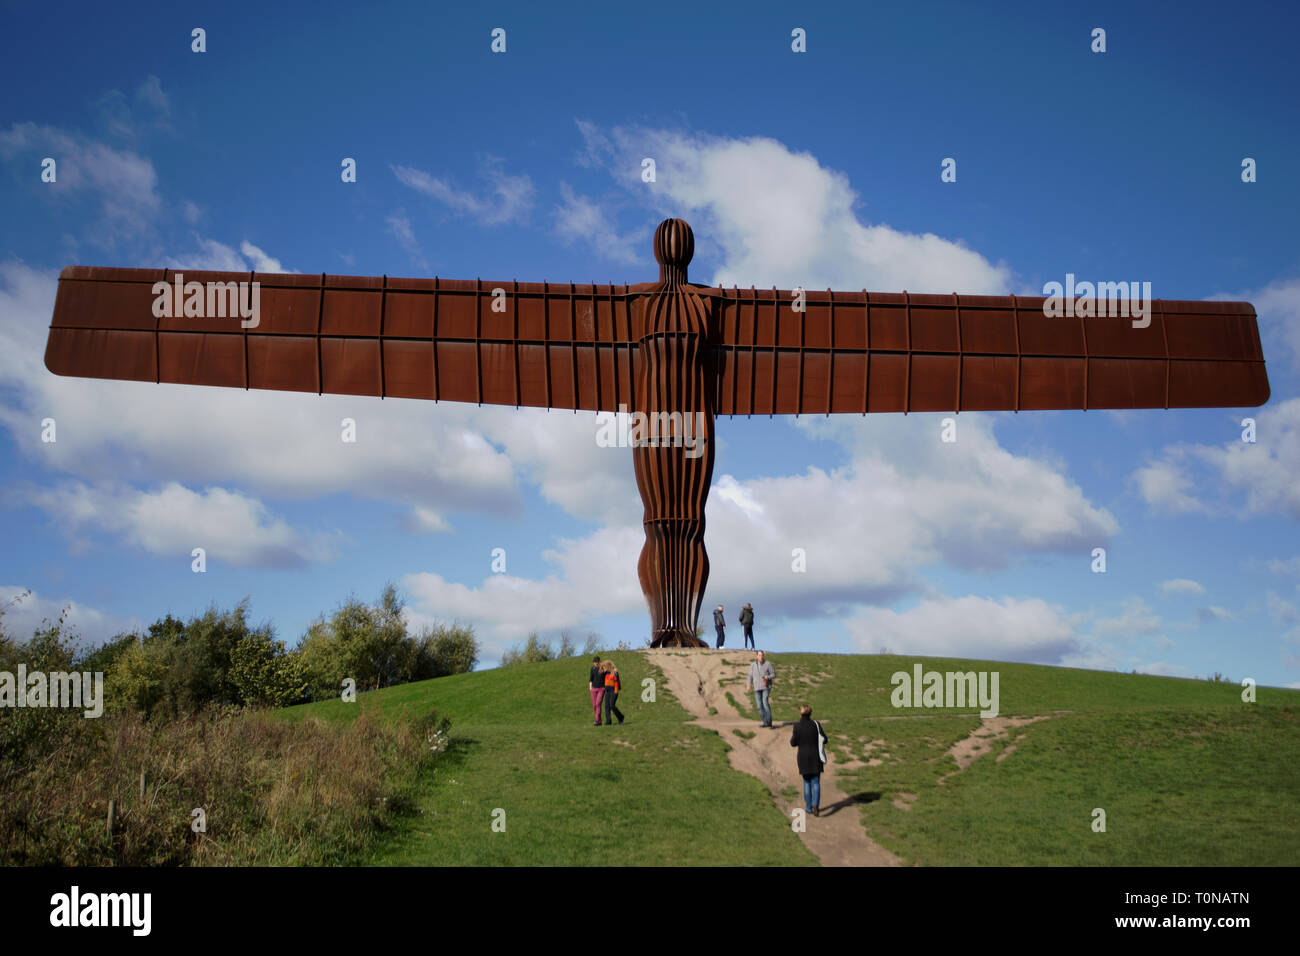 L'Ange du Nord : a 20 mètres de hauteur d'un ange scultpture en acier conçu par Antony Gormley au Lamesley près de Gateshead dans Tyne and Wear. Banque D'Images